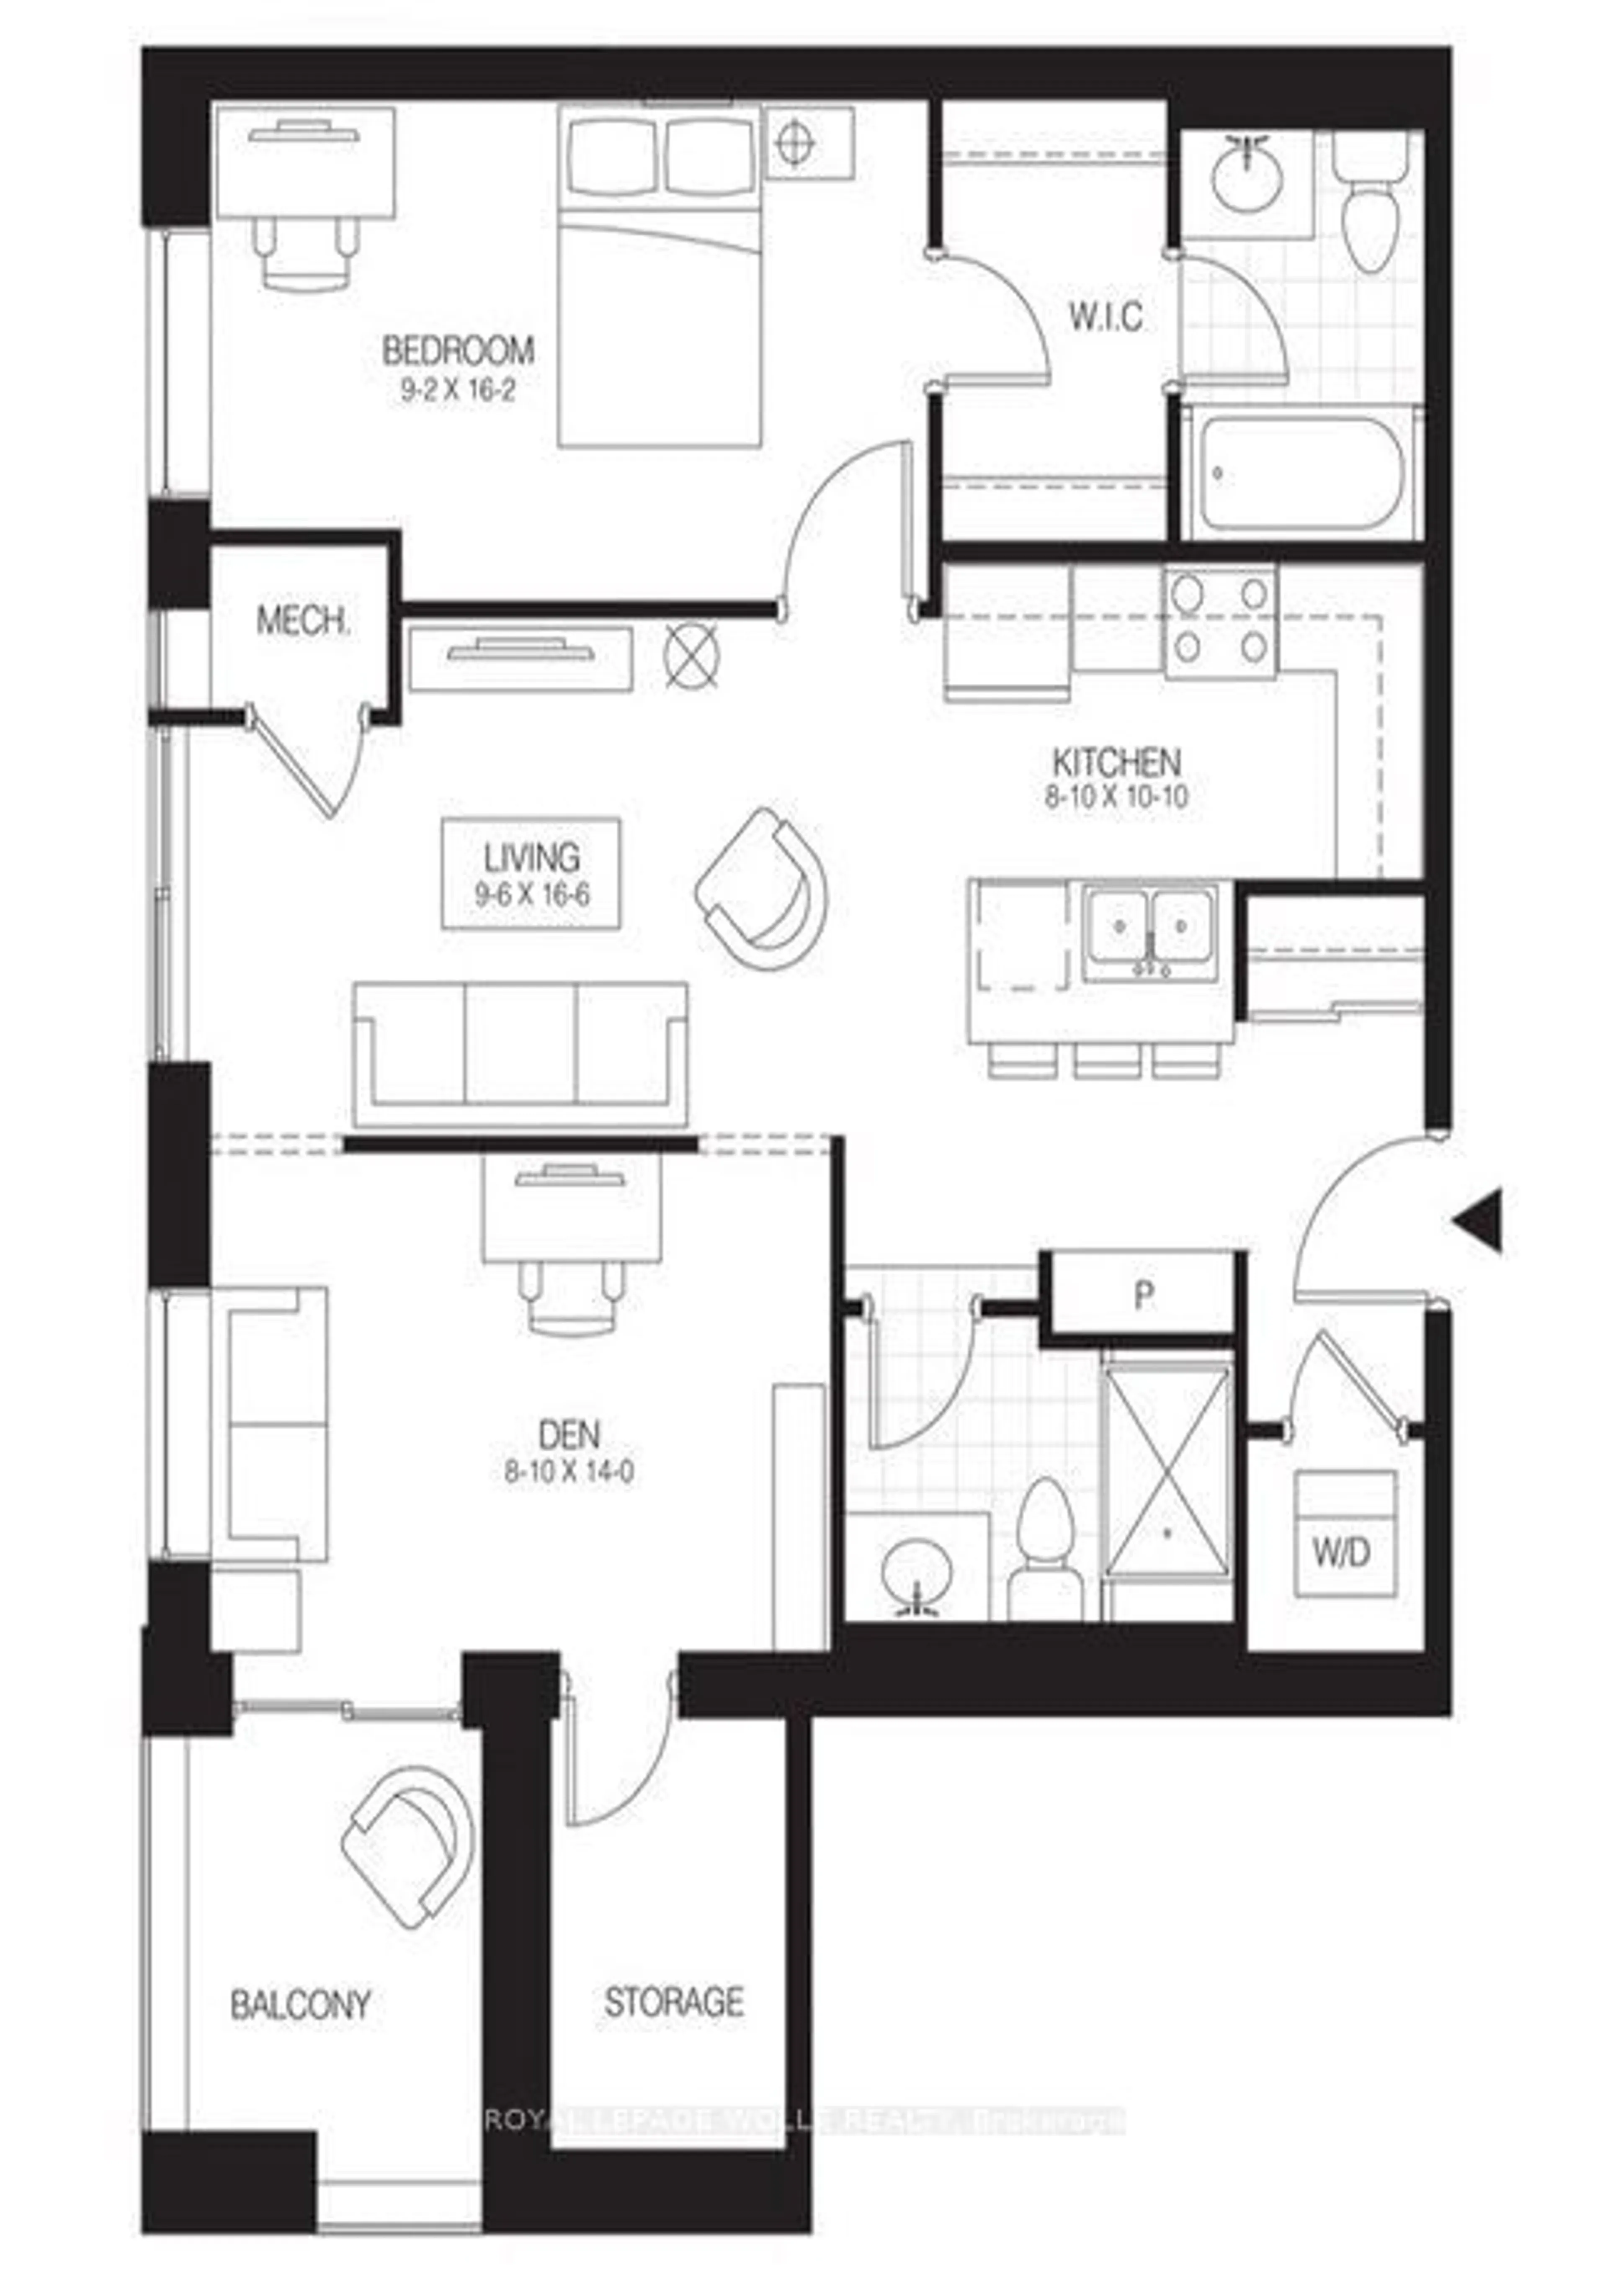 Floor plan for 62 Balsam St #H204, Waterloo Ontario N2L 3H2